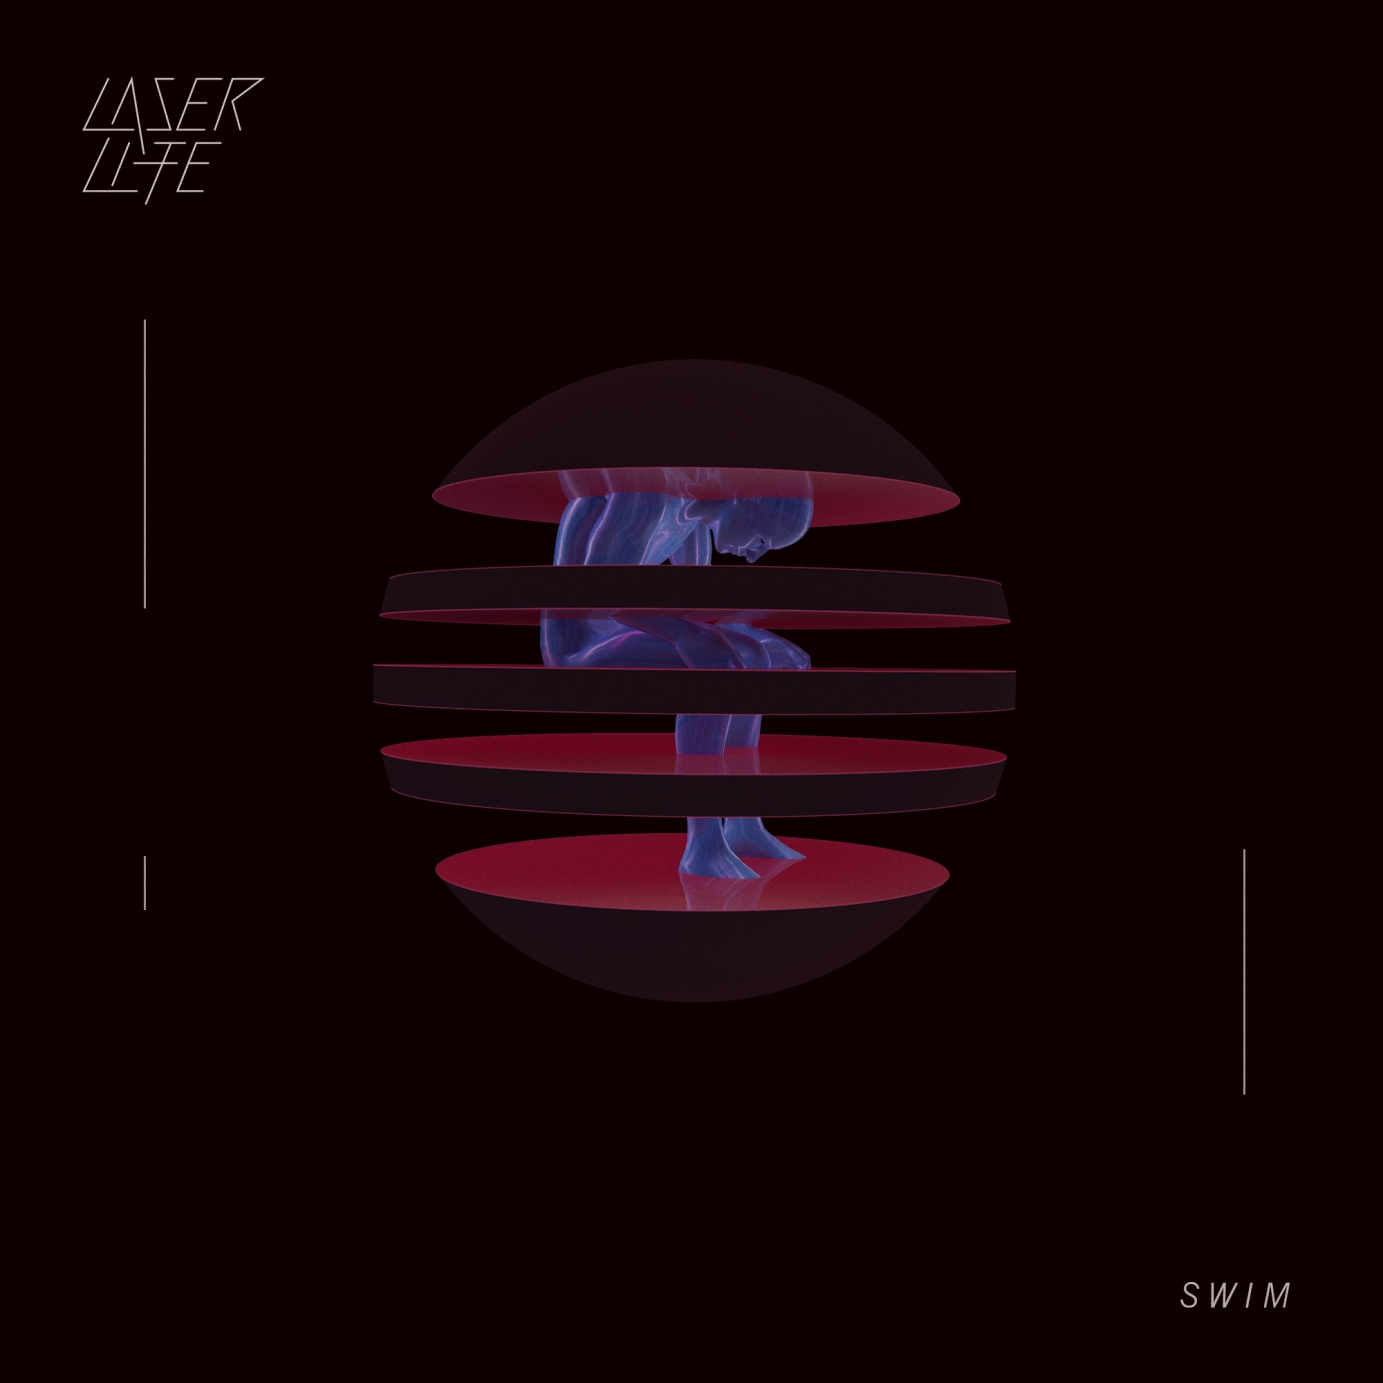 Laser Life "Language Of The Gods" EP